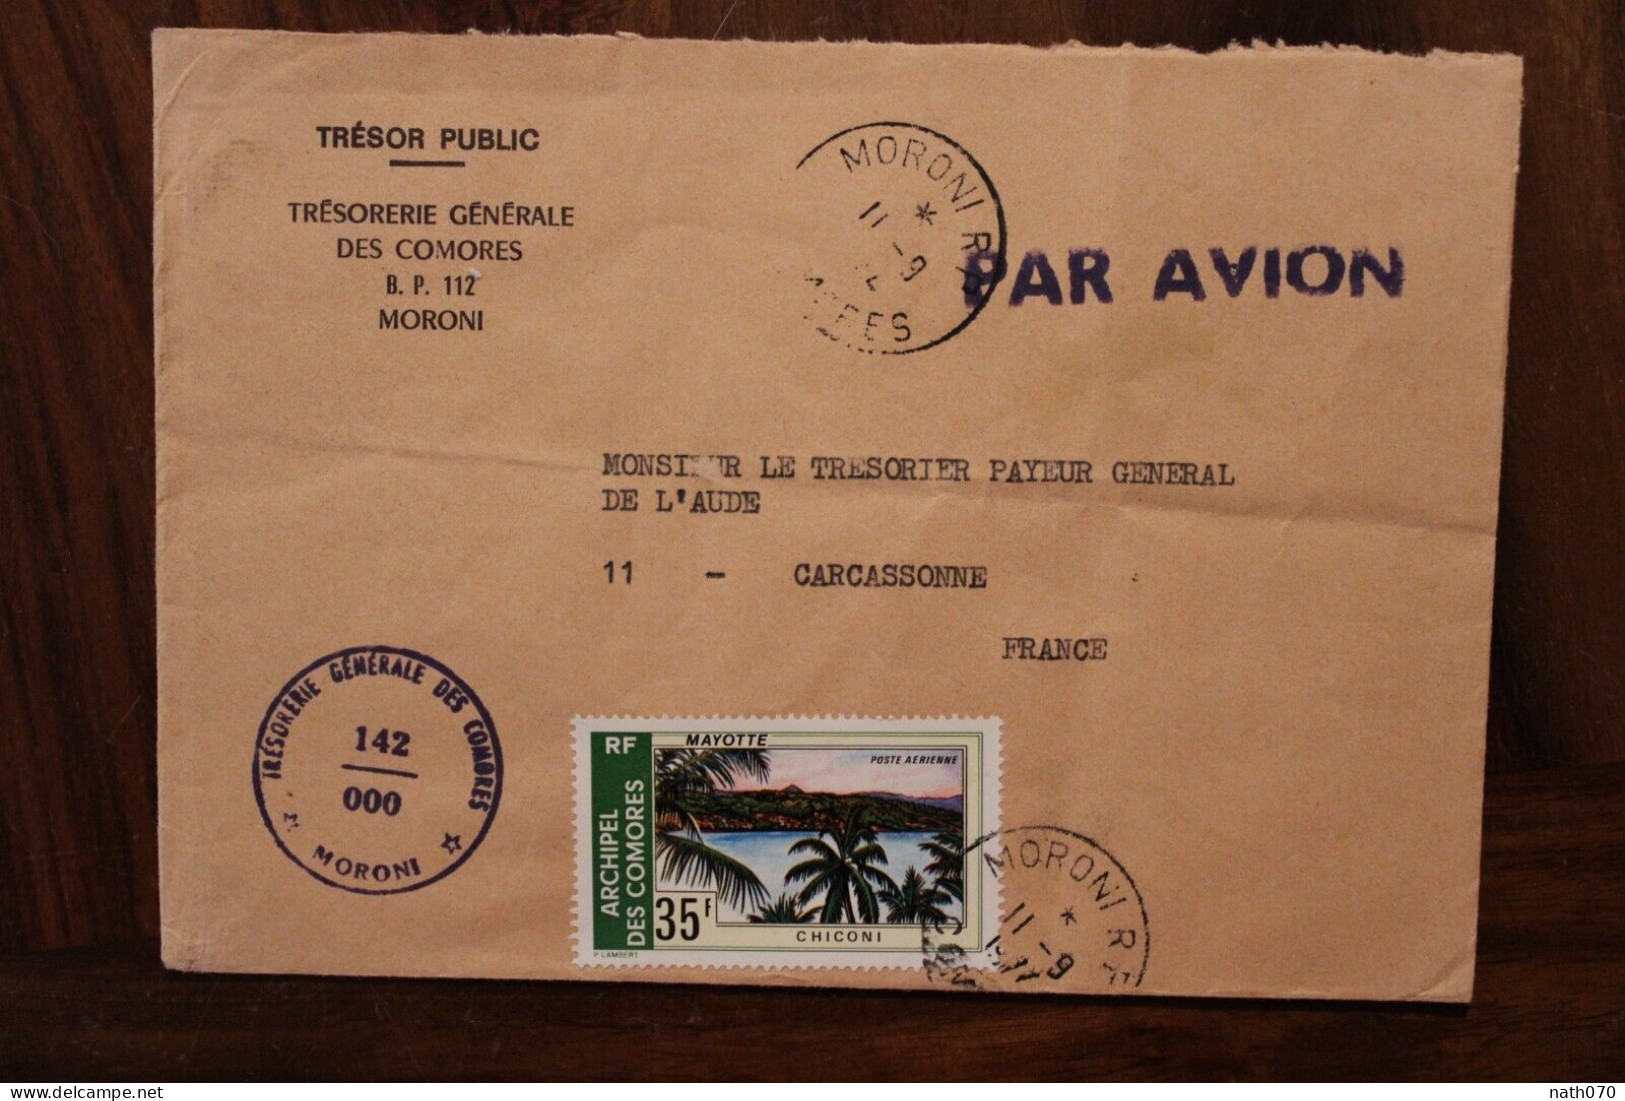 1977 Comores Trésorerie Générale Pour France Carcassonne Cover Air Mail Poste Aerienne Par Avion Timbre Mayotte - Comoros